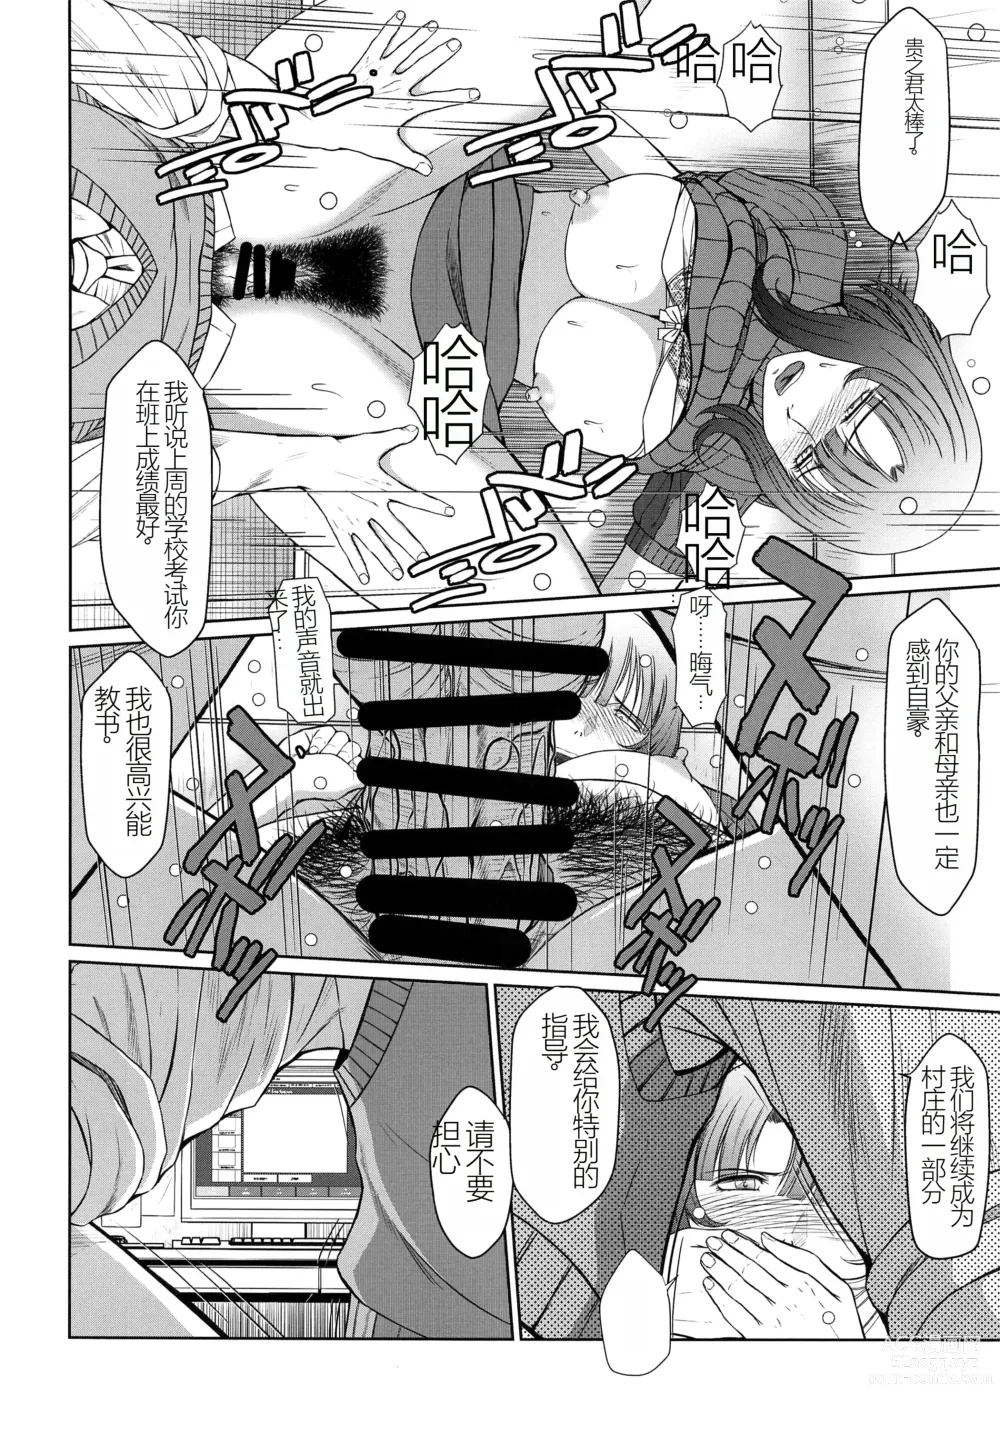 Page 25 of doujinshi Kagesawa Mura no Akai Kagi